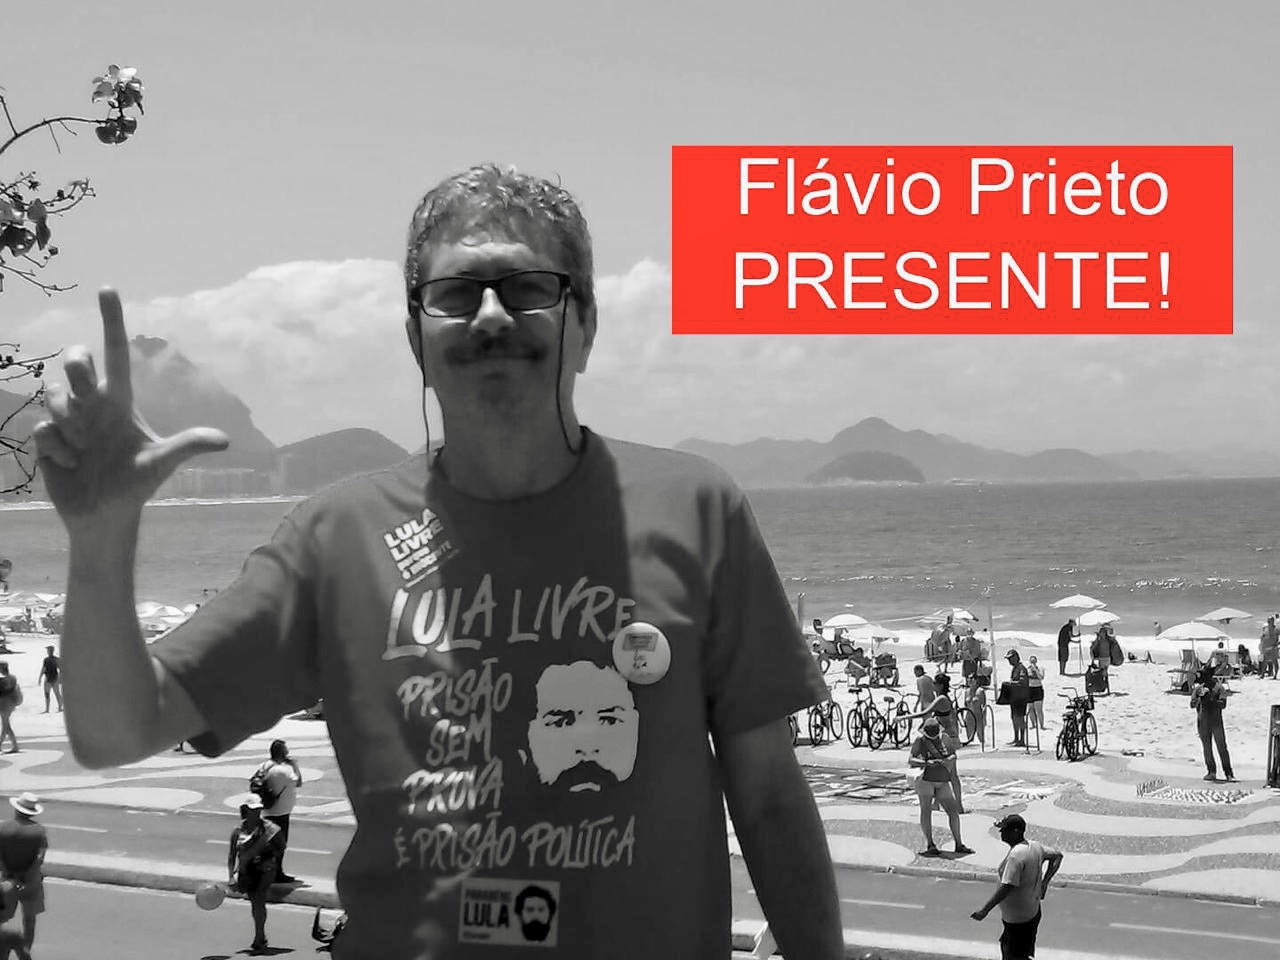 Missa em memória de Flavio Prieto, neste sábado (5/12), às 10h, SISEJUFE